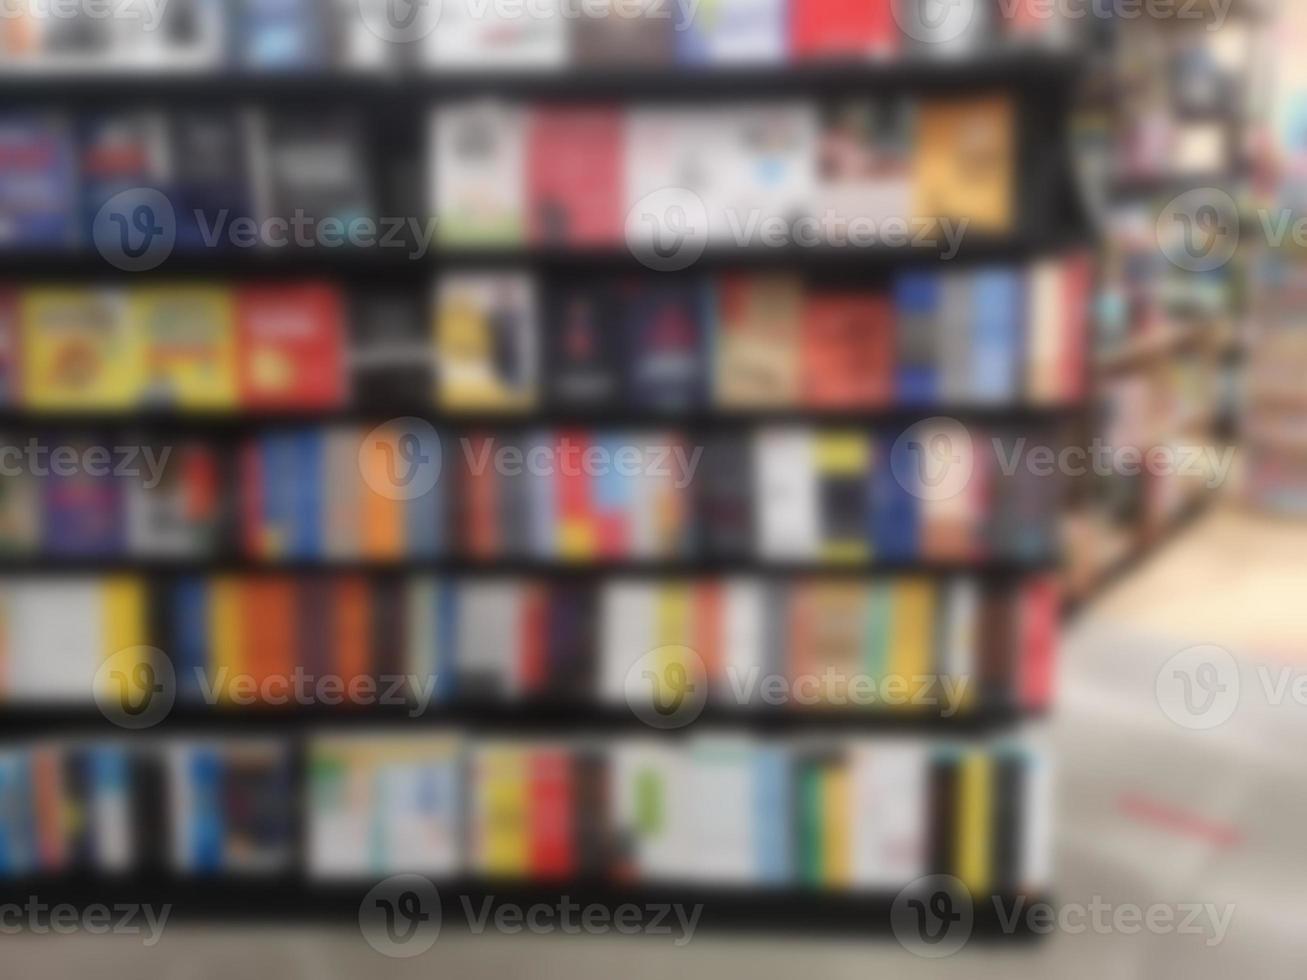 borroso de libros dispuestos en estanterías, estantería en la tienda o biblioteca, fondo foto